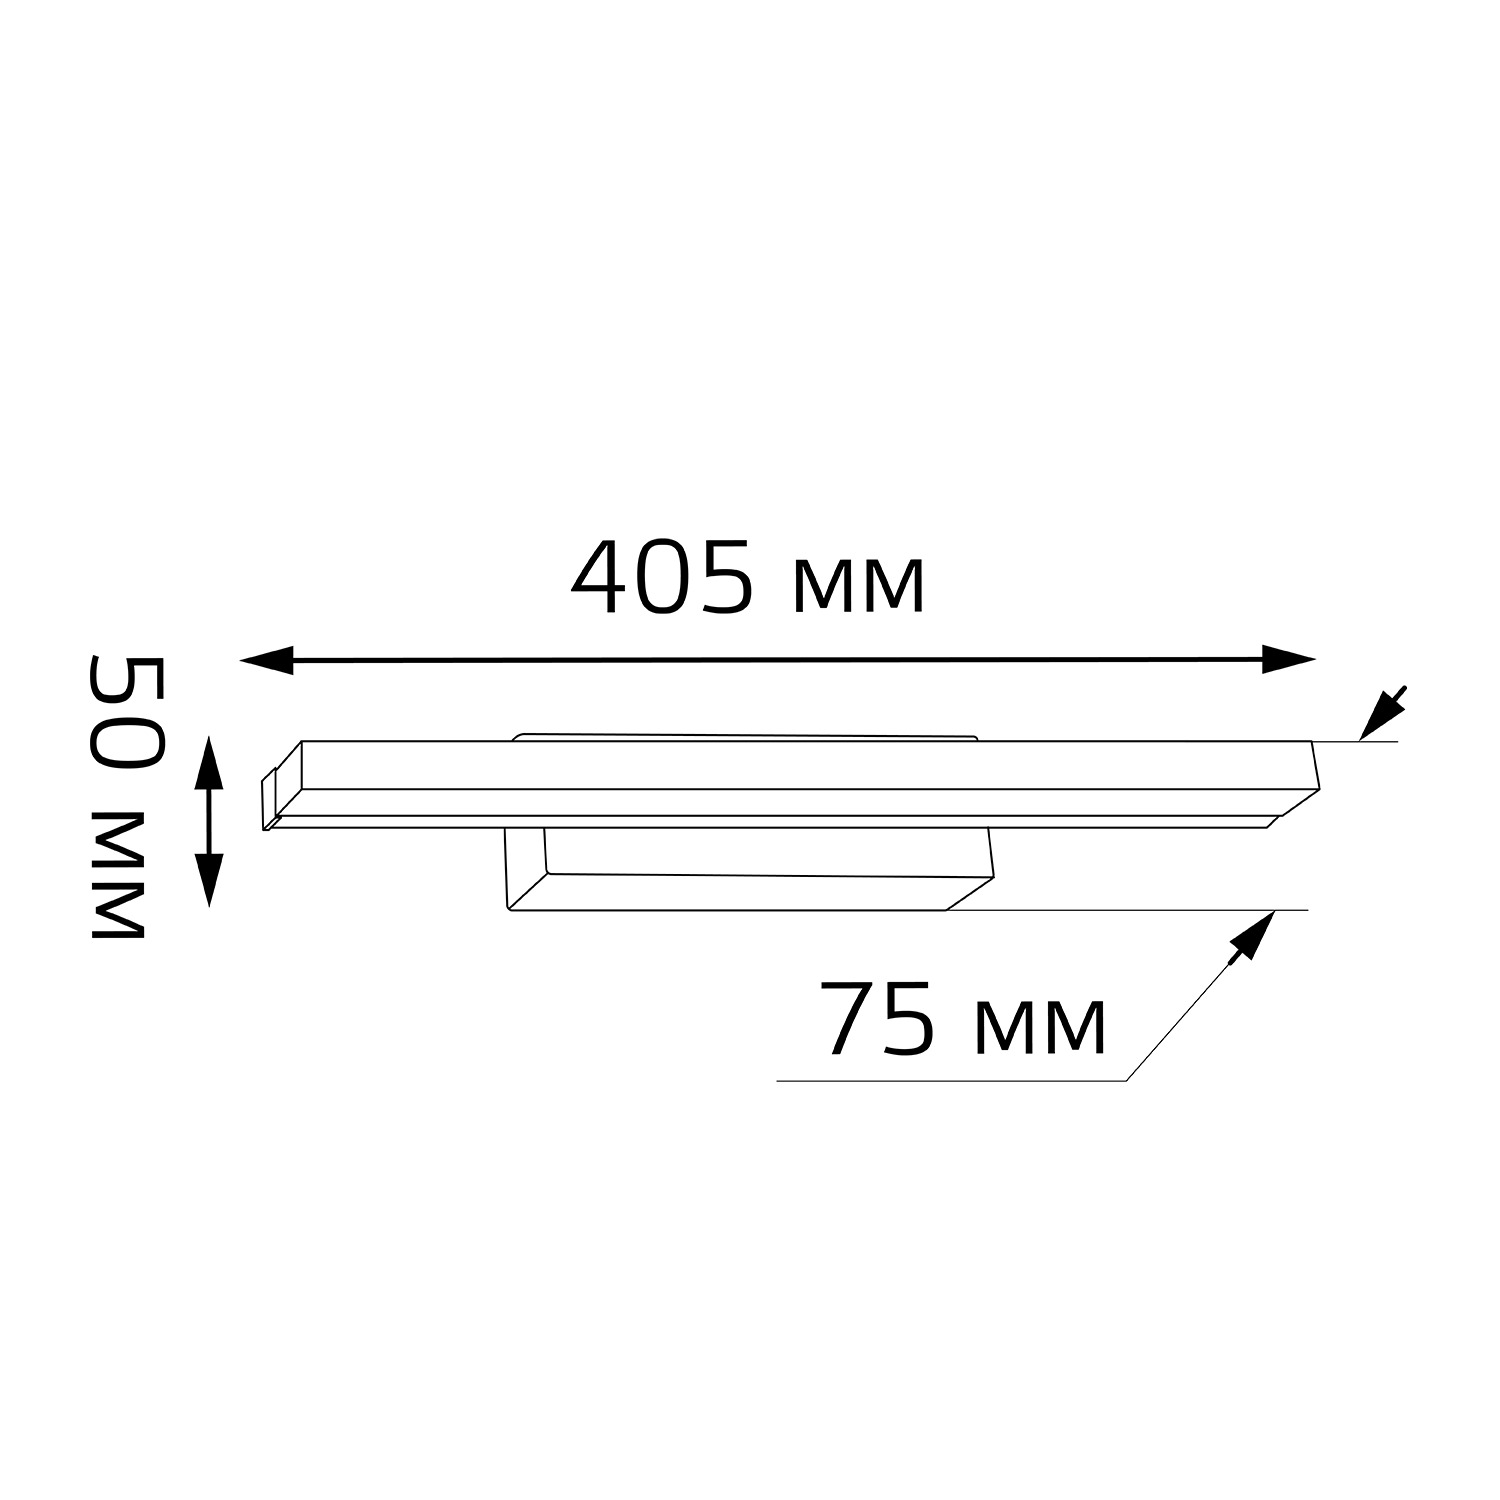 Настенный светодиодный светильник Gauss BR011 9W 700lm 200-240V 405mm LED 1/20 - фото 9